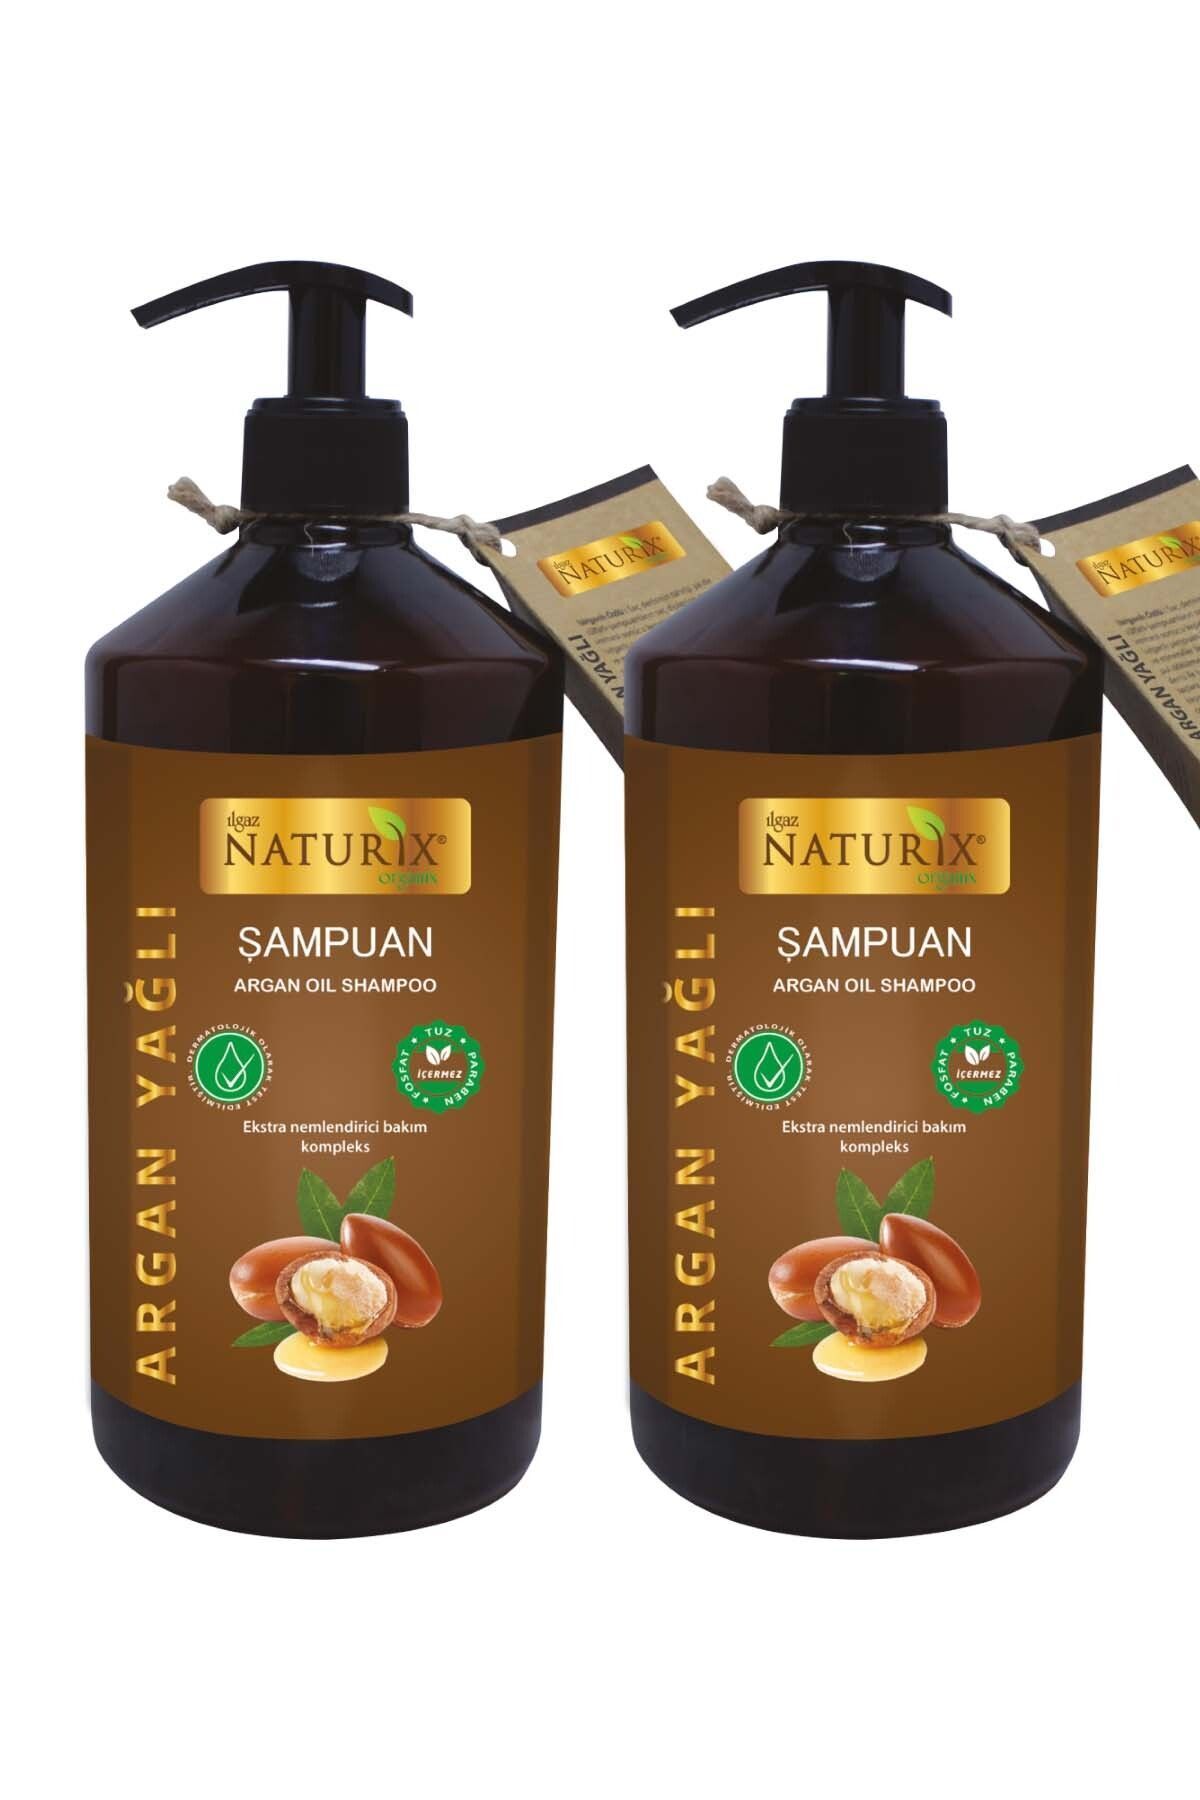 Ilgaz Naturix Organix 2 Adet Tuzsuz Argan Yağlı 600 Ml Bakım Şampuanı Argan Şampuan ( Paraben Fosfat Tuz Içermez )